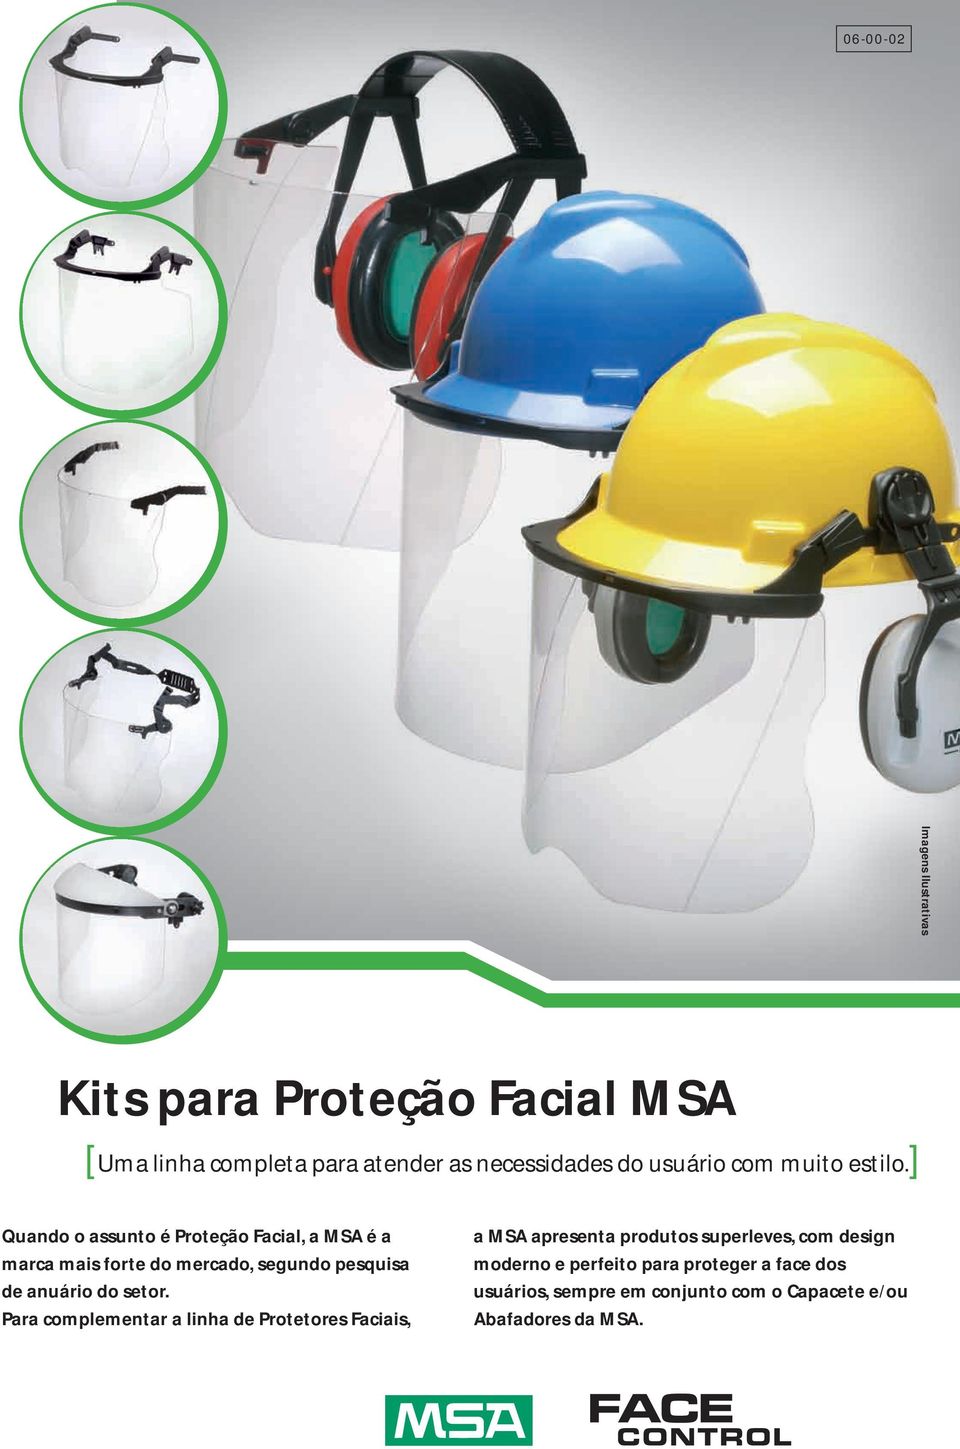 ] Quando o assunto é Proteção Facial, a MSA é a marca mais forte do mercado, segundo pesquisa de anuário do setor.